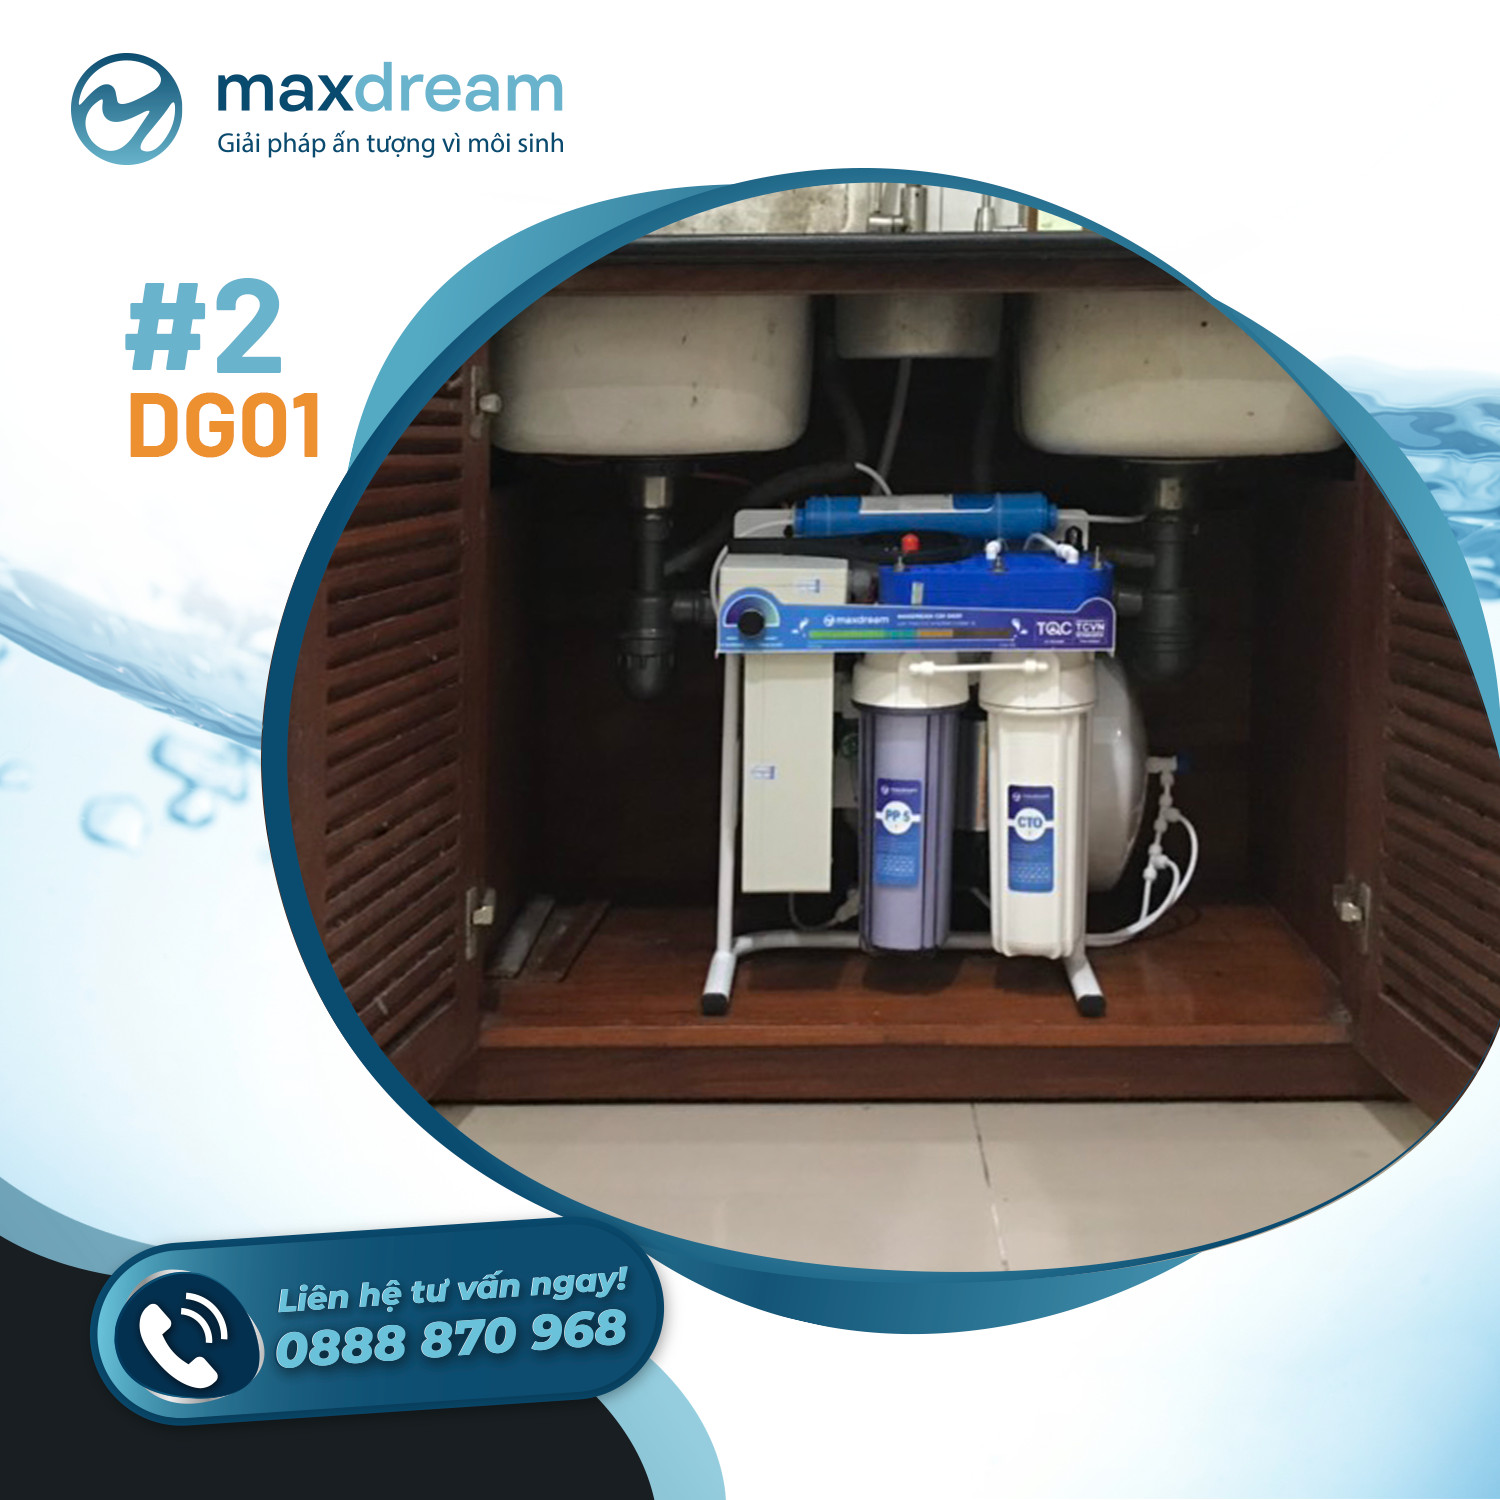 Hình ảnh lắp đặt máy lọc nước để gầm tại nhà khách hàng